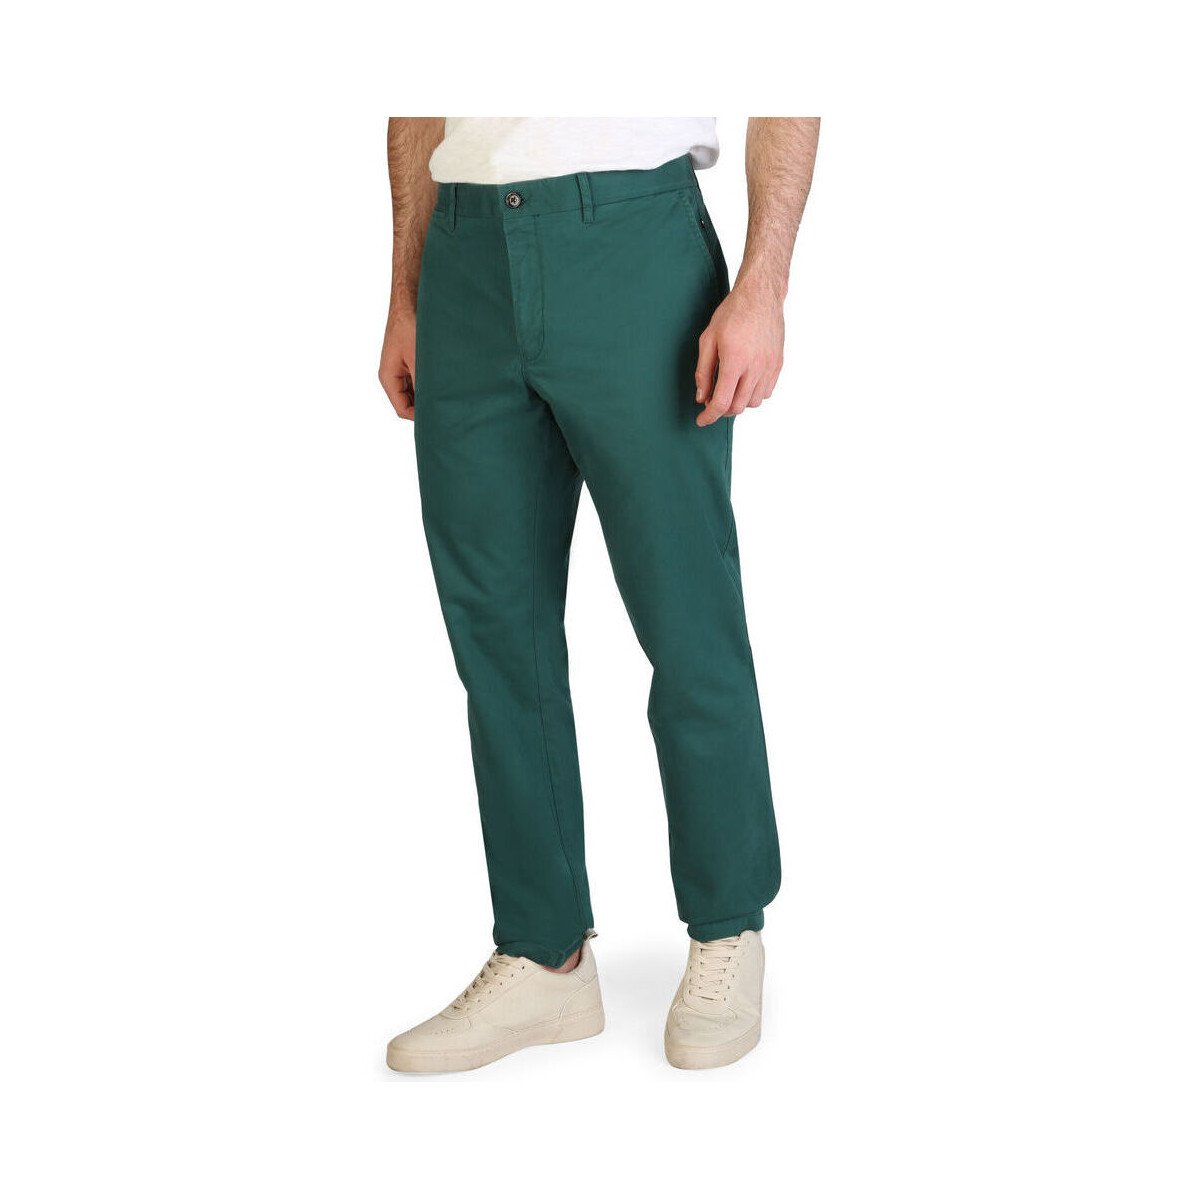 Textiel Heren Broeken / Pantalons Tommy Hilfiger - xm0xm00976 Groen